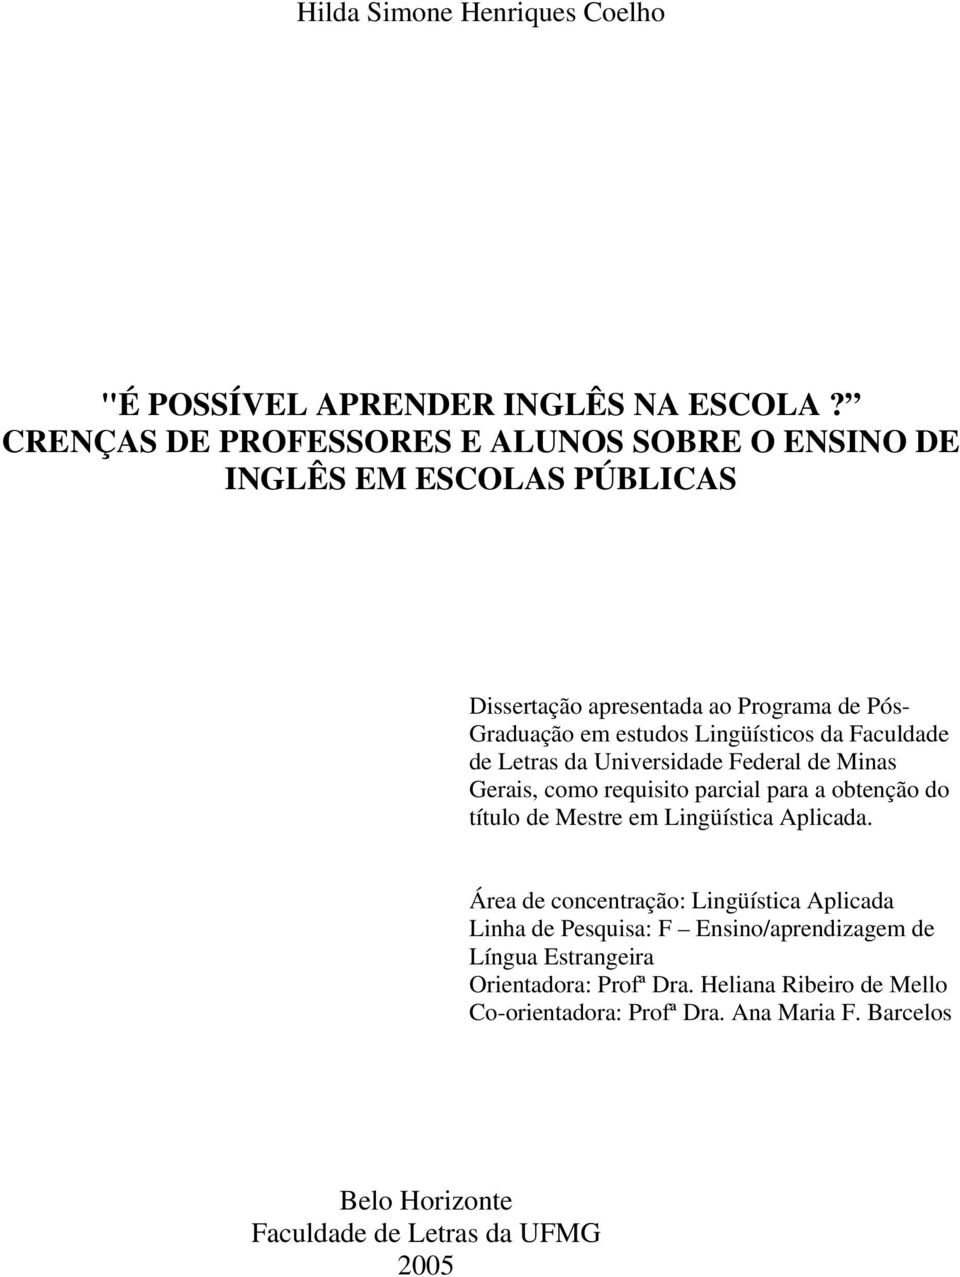 da Faculdade de Letras da Universidade Federal de Minas Gerais, como requisito parcial para a obtenção do título de Mestre em Lingüística Aplicada.